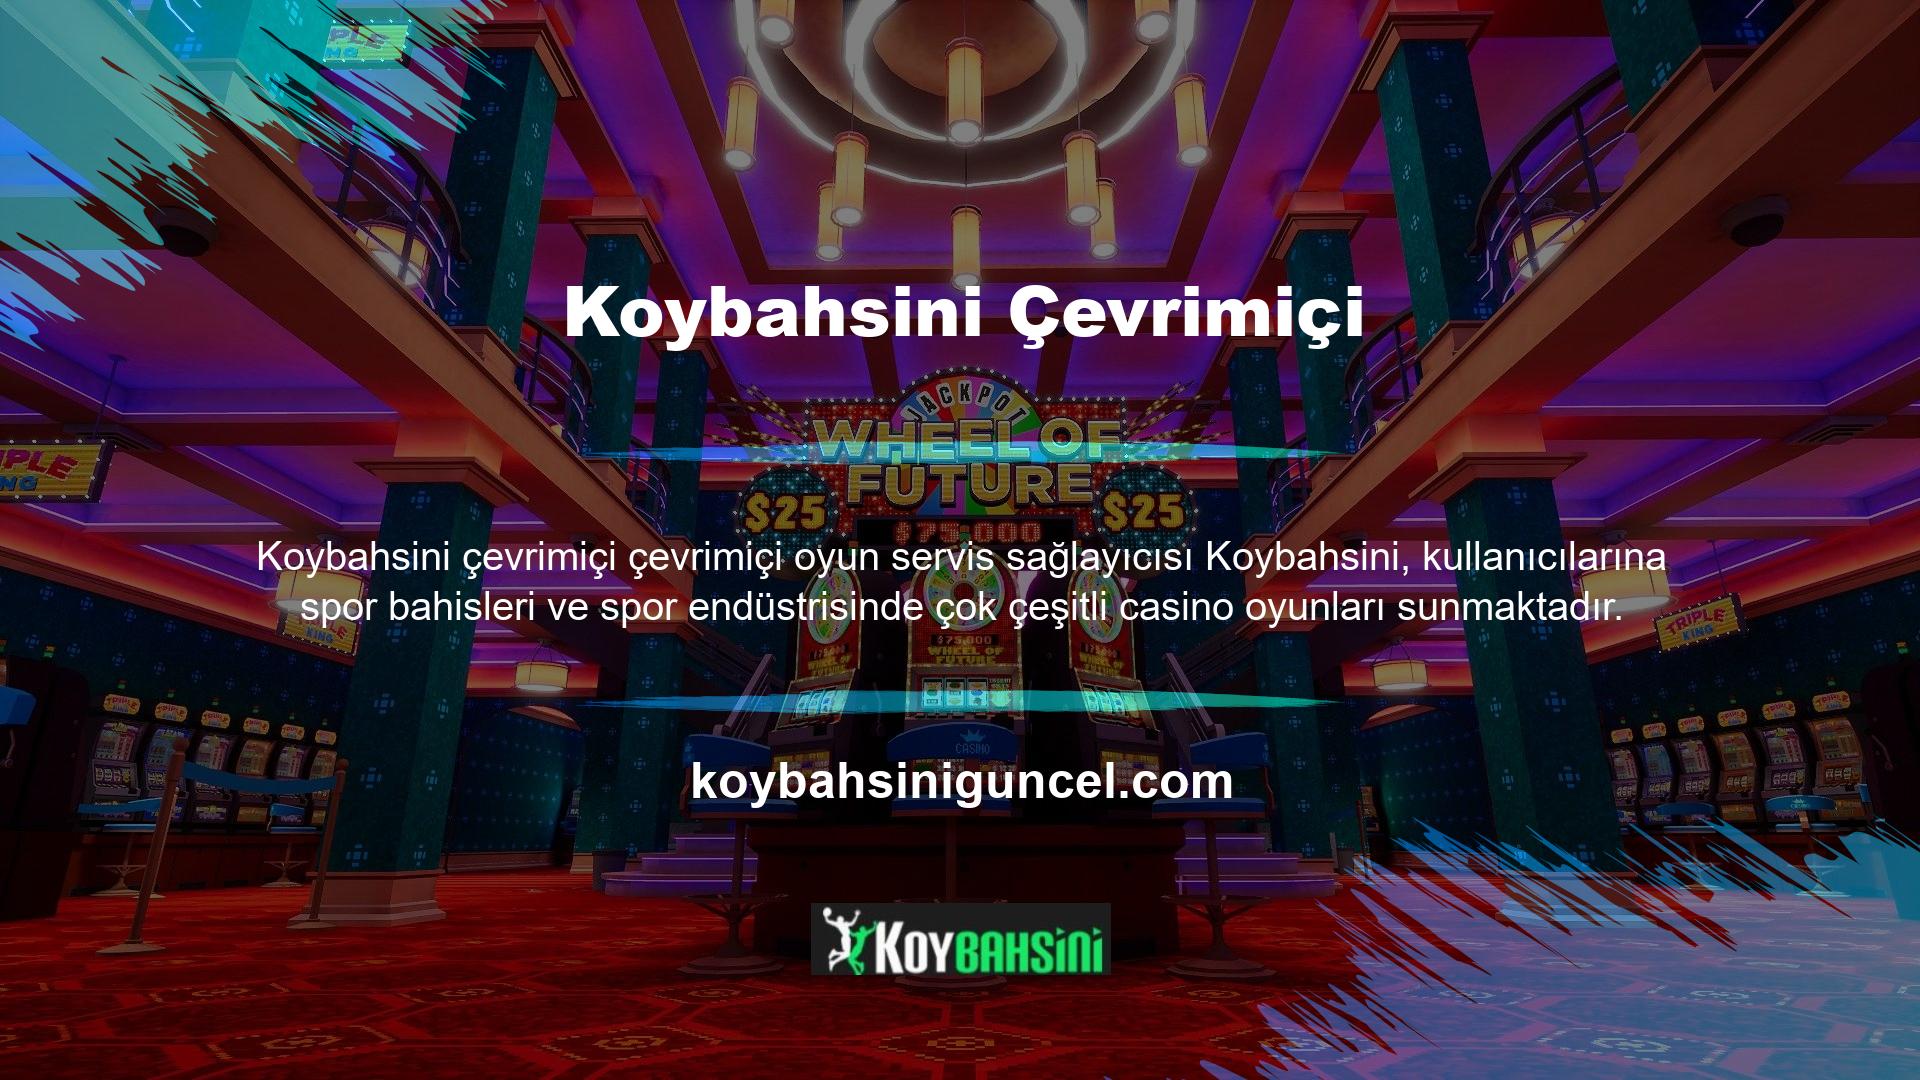 Her Koybahsini üyesi, kendi Koybahsini hesabına para aktarır ve hesap bakiyesi belirli bir yüzdeyi aştığında oynamaya başlar